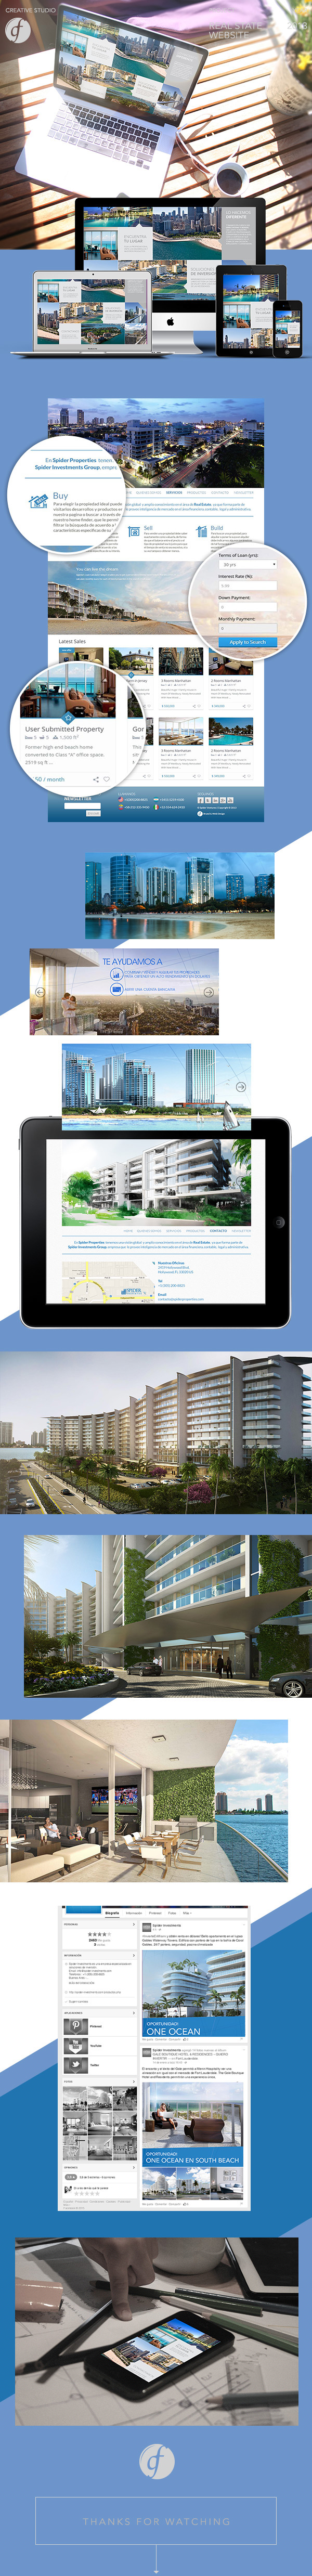 properties spider ventures inmobiliaria proyectos Web sitio miami usa arquitectura propiedades Real estate immo invest